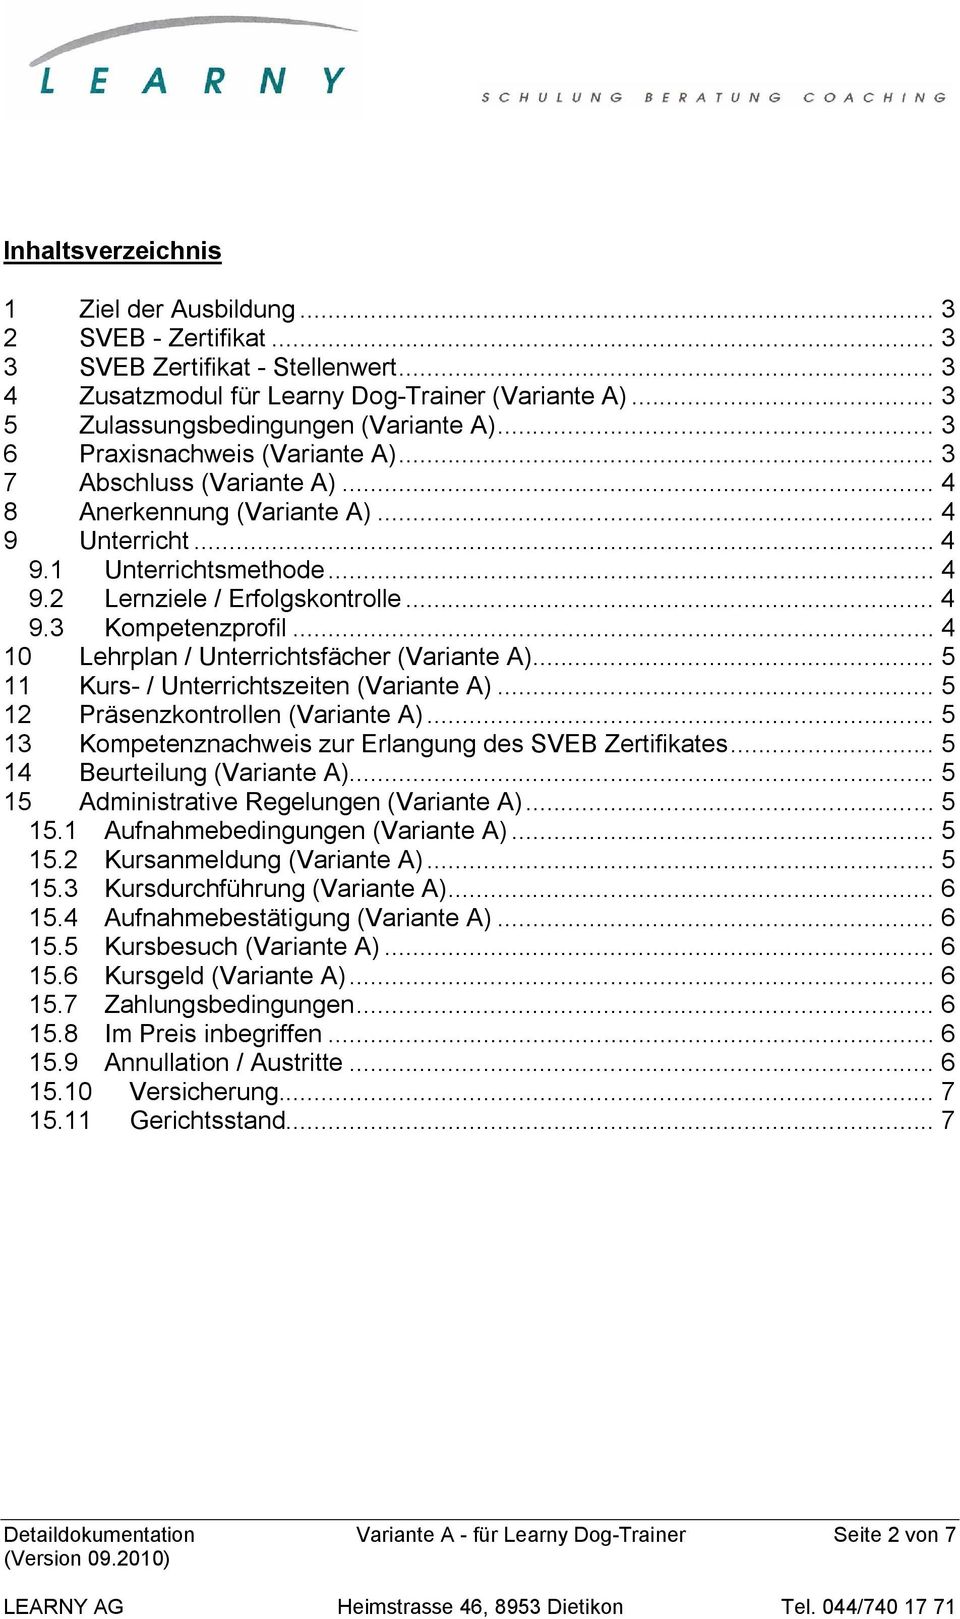 .. 4 10 Lehrplan / Unterrichtsfächer (Variante A)... 5 11 Kurs- / Unterrichtszeiten (Variante A)... 5 12 Präsenzkontrollen (Variante A)... 5 13 Kompetenznachweis zur Erlangung des SVEB Zertifikates.